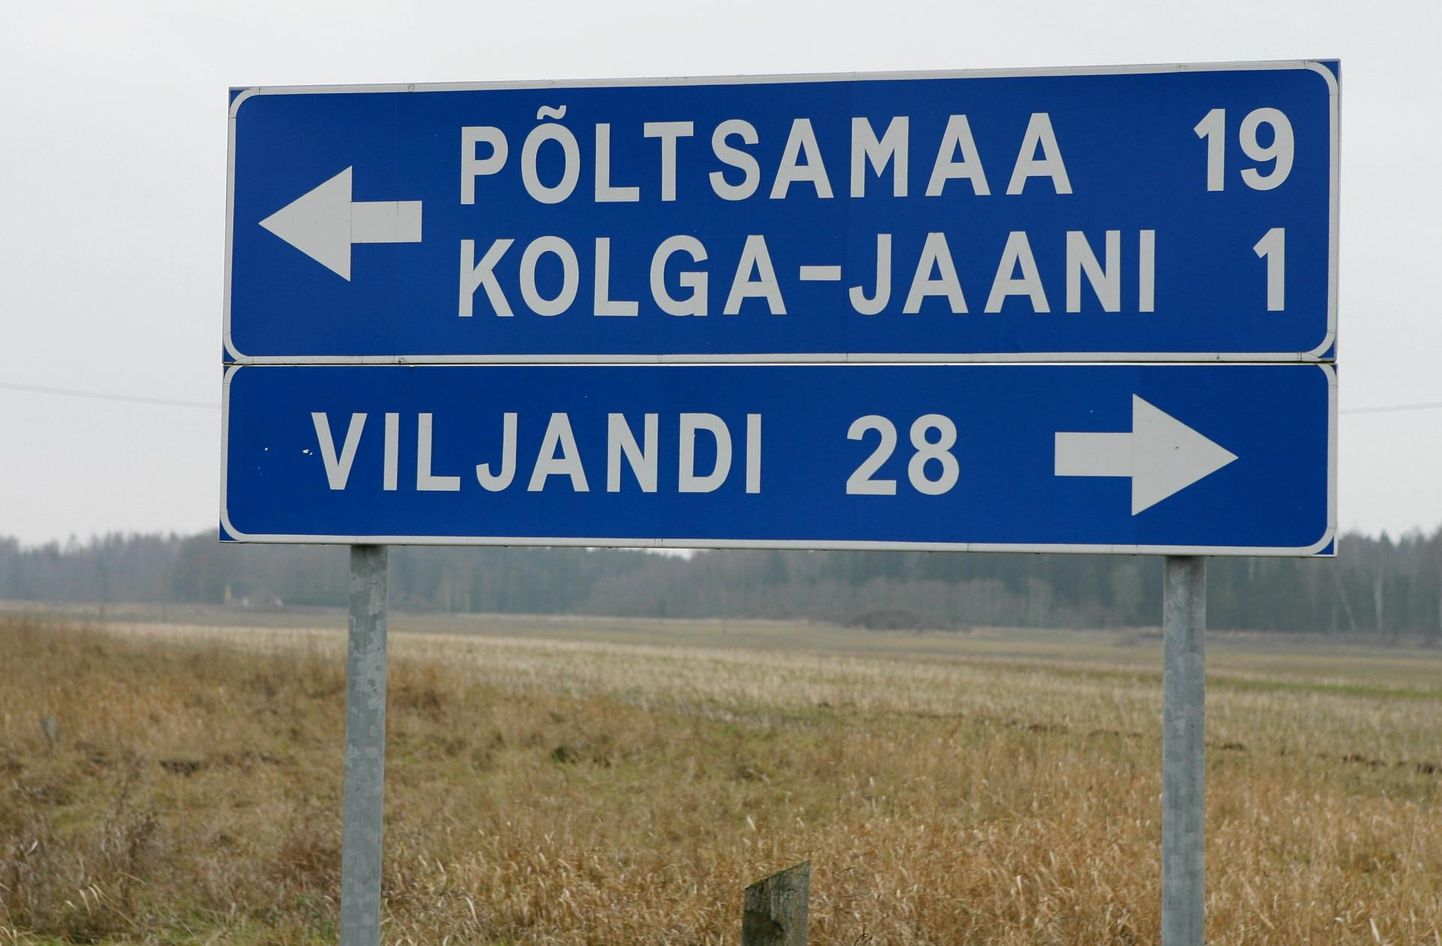 Jõgevamaal asuv Põltsamaa vald on Viljandimaaga seotud mitmel moel. Seni ollakse siiski naabrid kahest maakonnast.